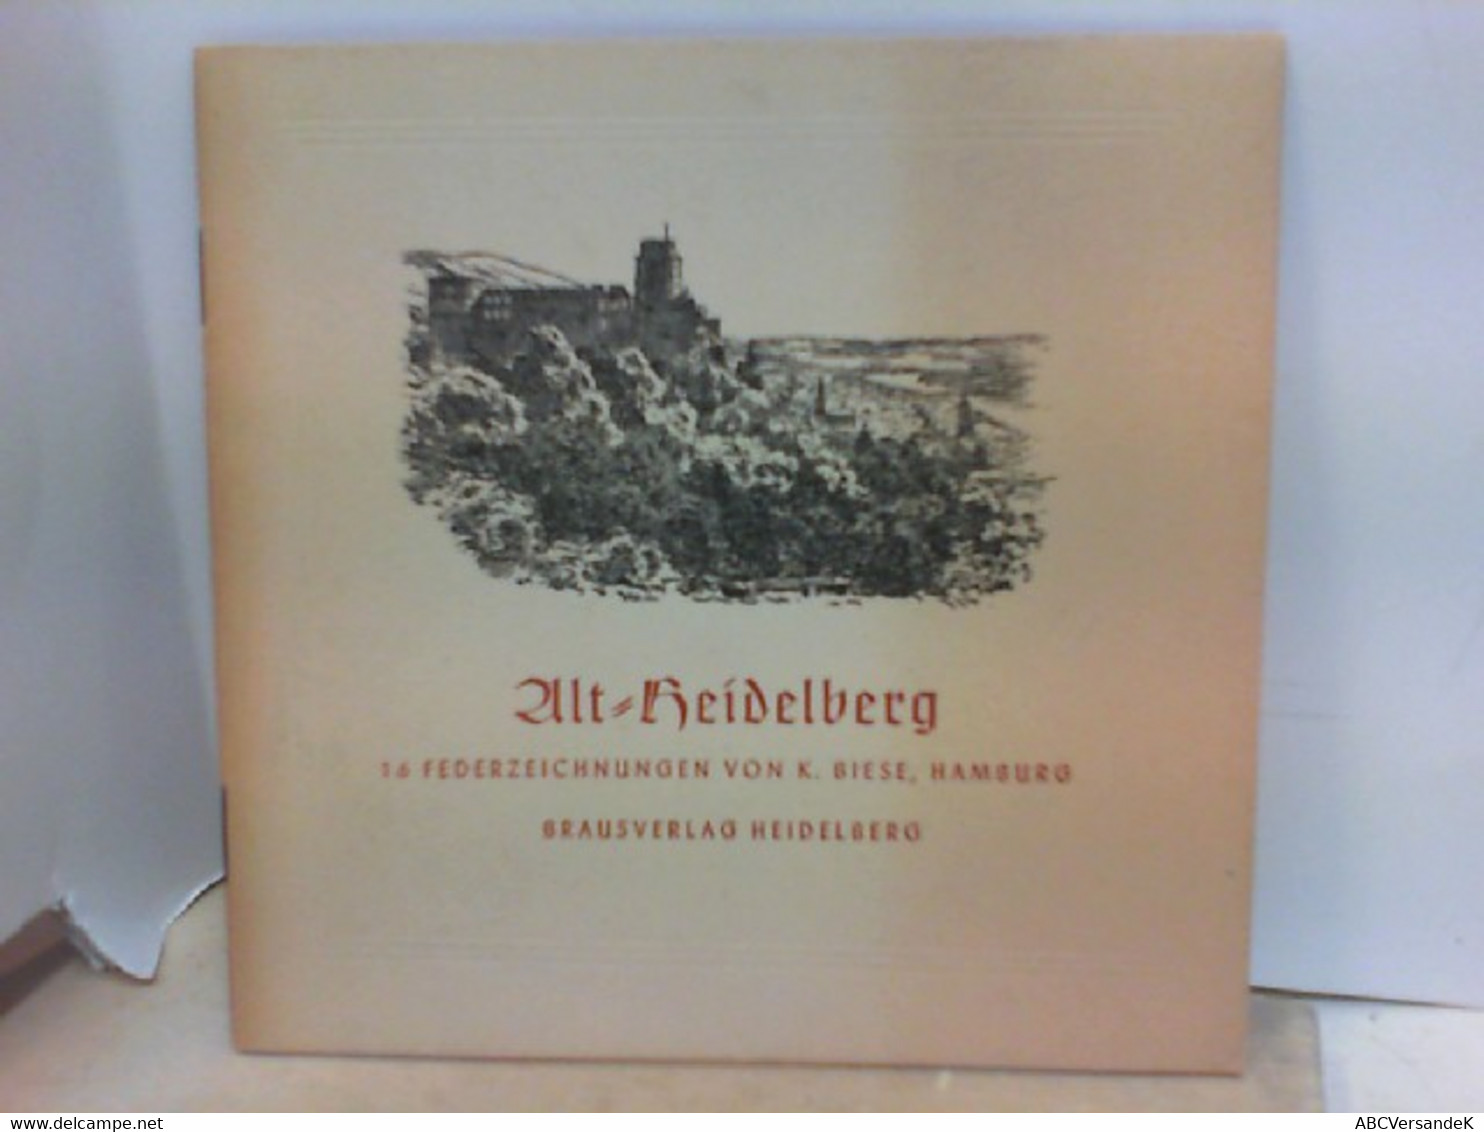 Alt - Heidelberg - 16 Federzeichnungen - Alemania Todos